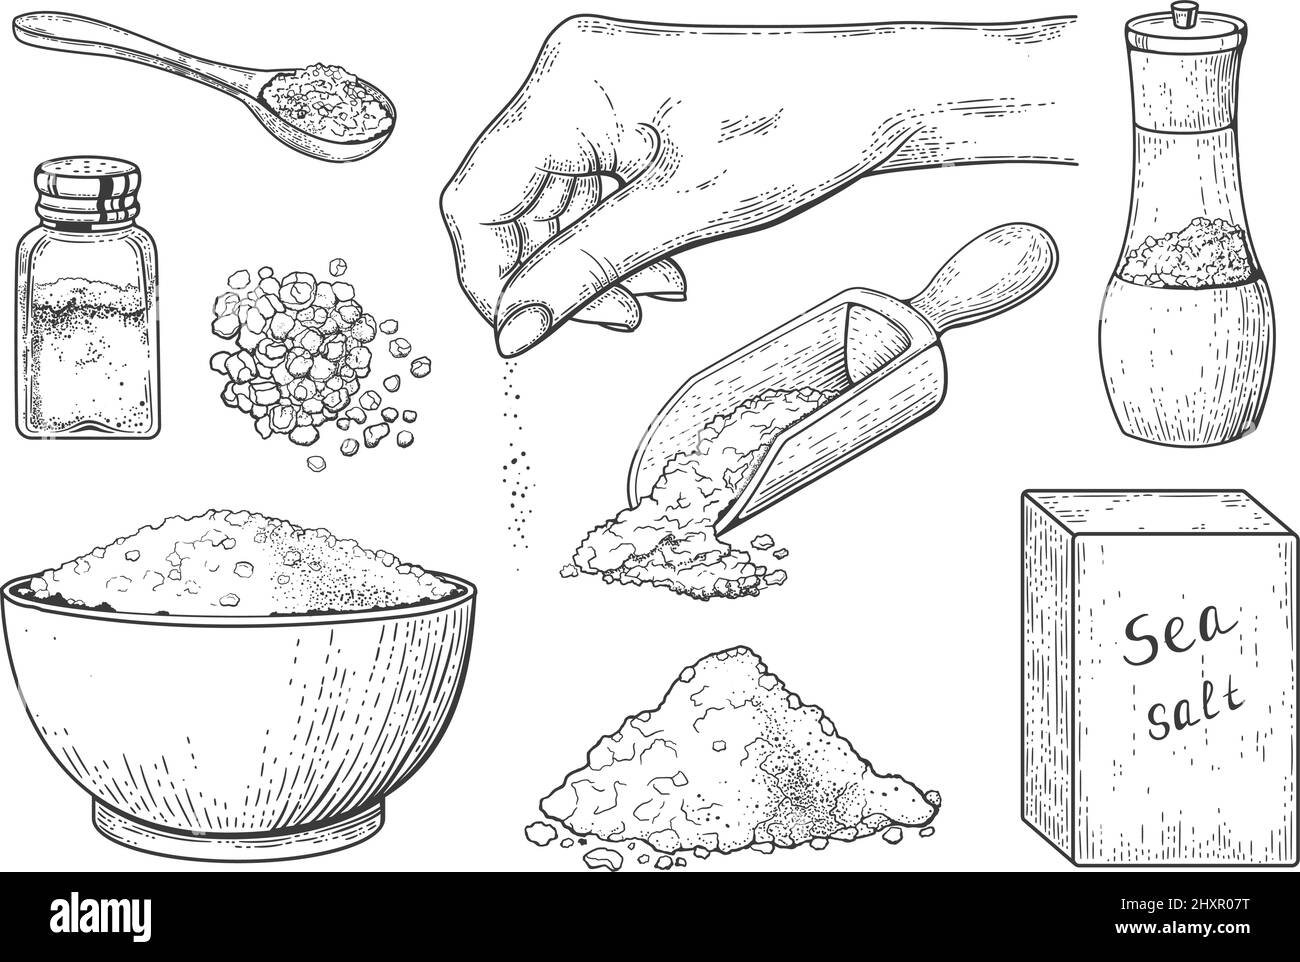 Meersalz Vintage Gravur, Würze von Lebensmitteln in Löffel und Schüssel. Handgezeichnetes Salzkristallpulver in der Hand, Holzlöffel mit Salz-Vektor-Skizze-Set. Salzstreuer, Behälter und Verpackung für Kristalle Stock Vektor